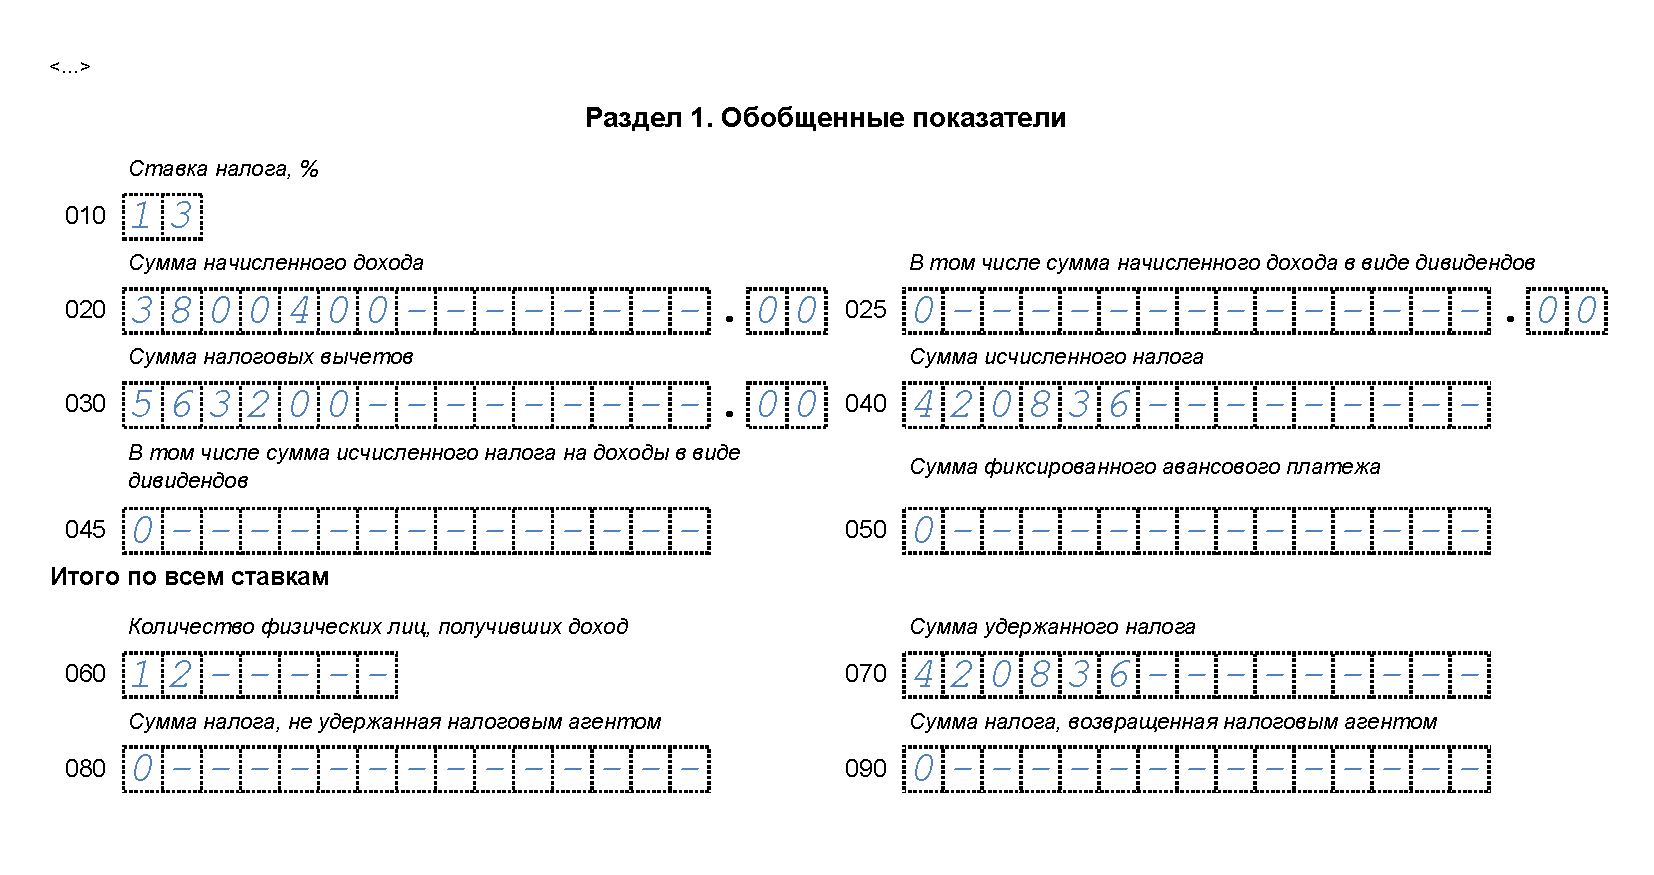 primer-zapolneniya-6-ndfl-za-3-kvartal-s-otpusknymi-1